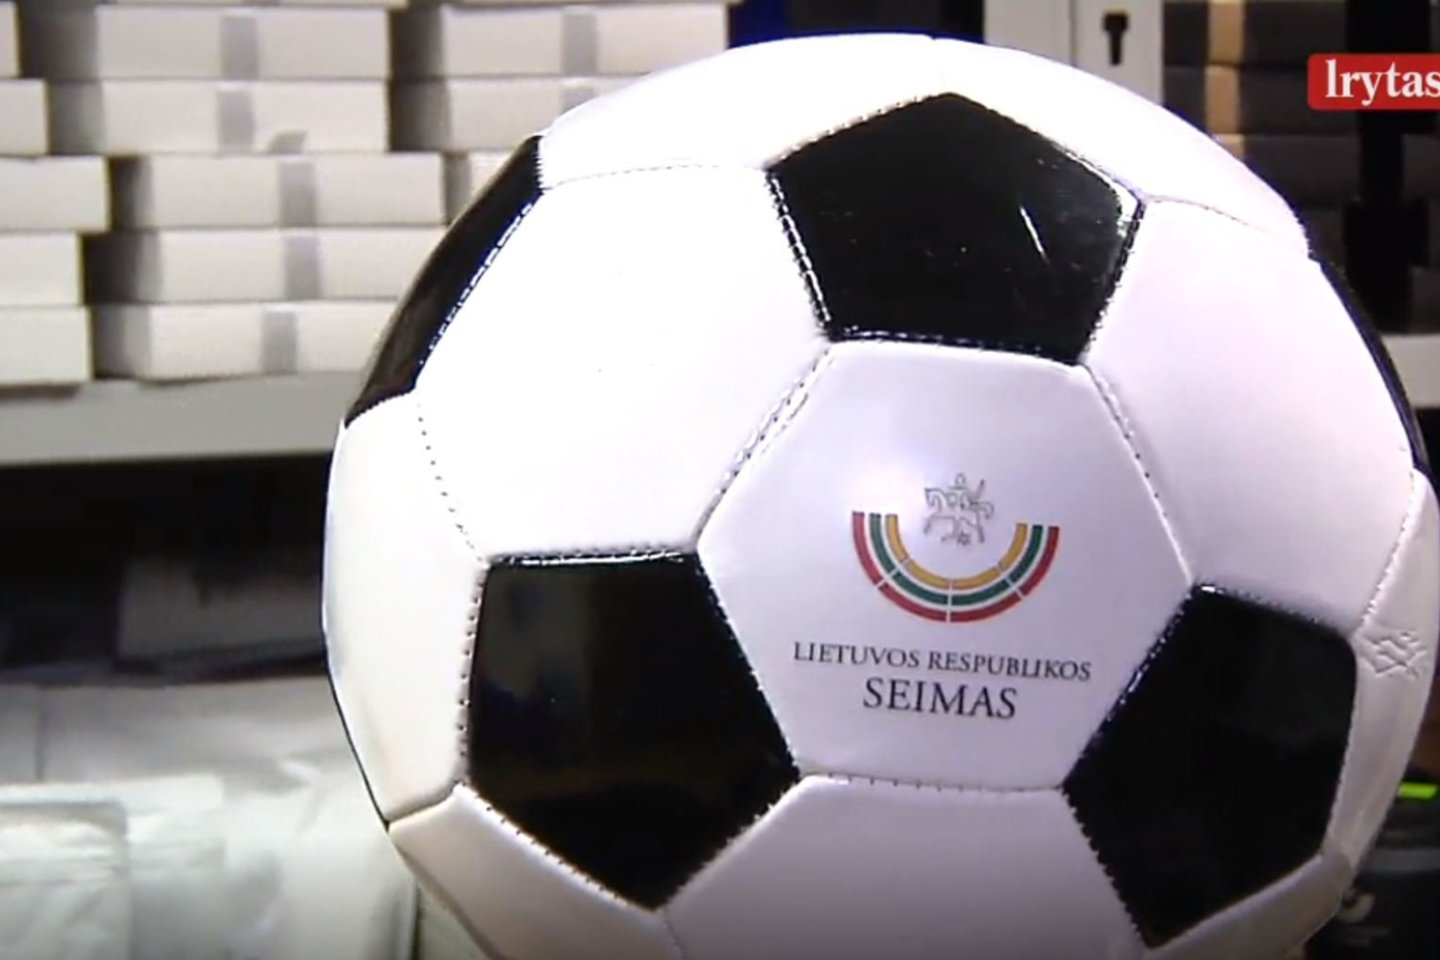  Dar Seimo sandėliuke kalnas futbolo kamuolių. Jais reprezentuojamas Seimas ir visa Lietuva.<br> Stop kadras.